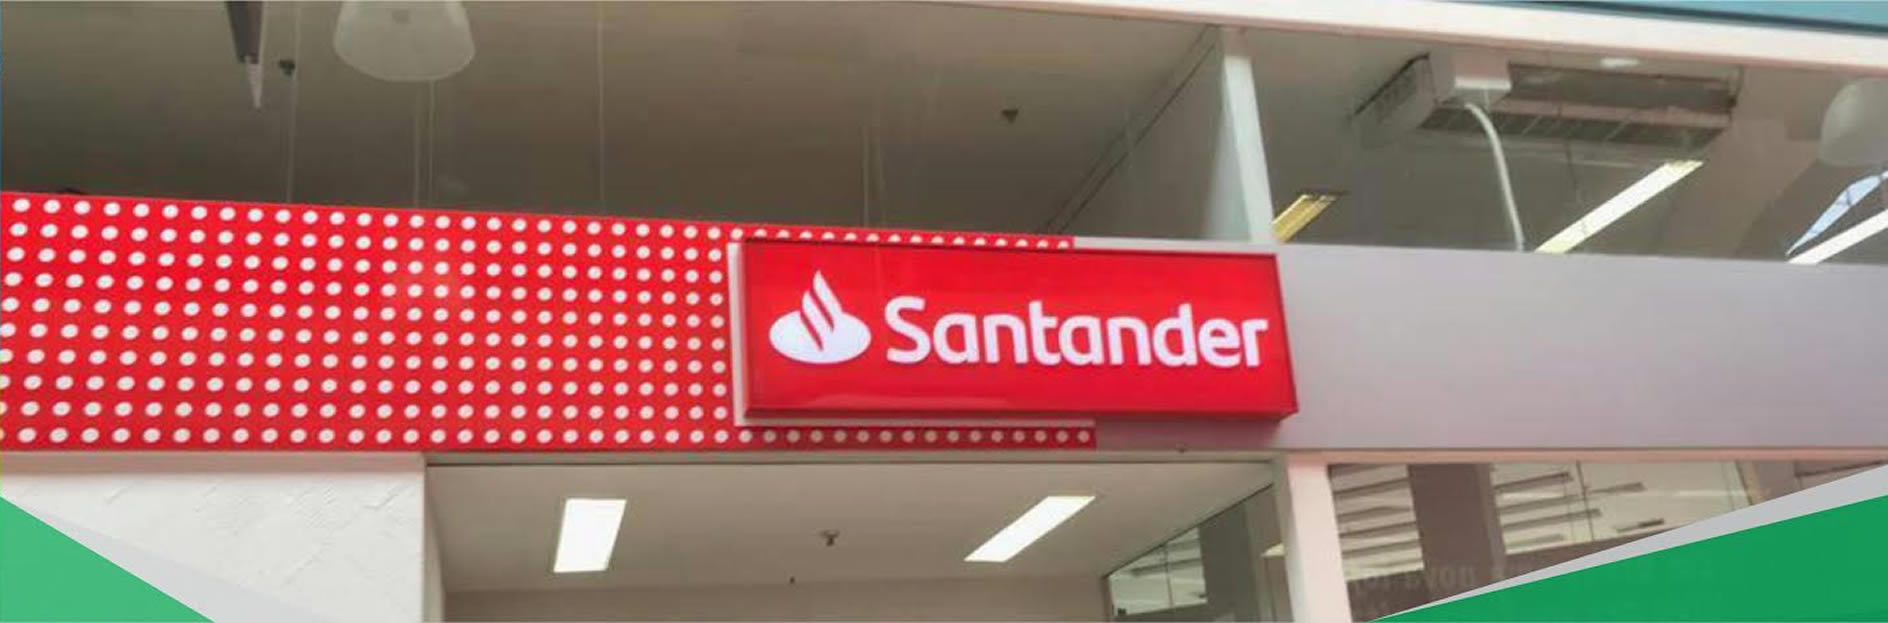 Santander<br>